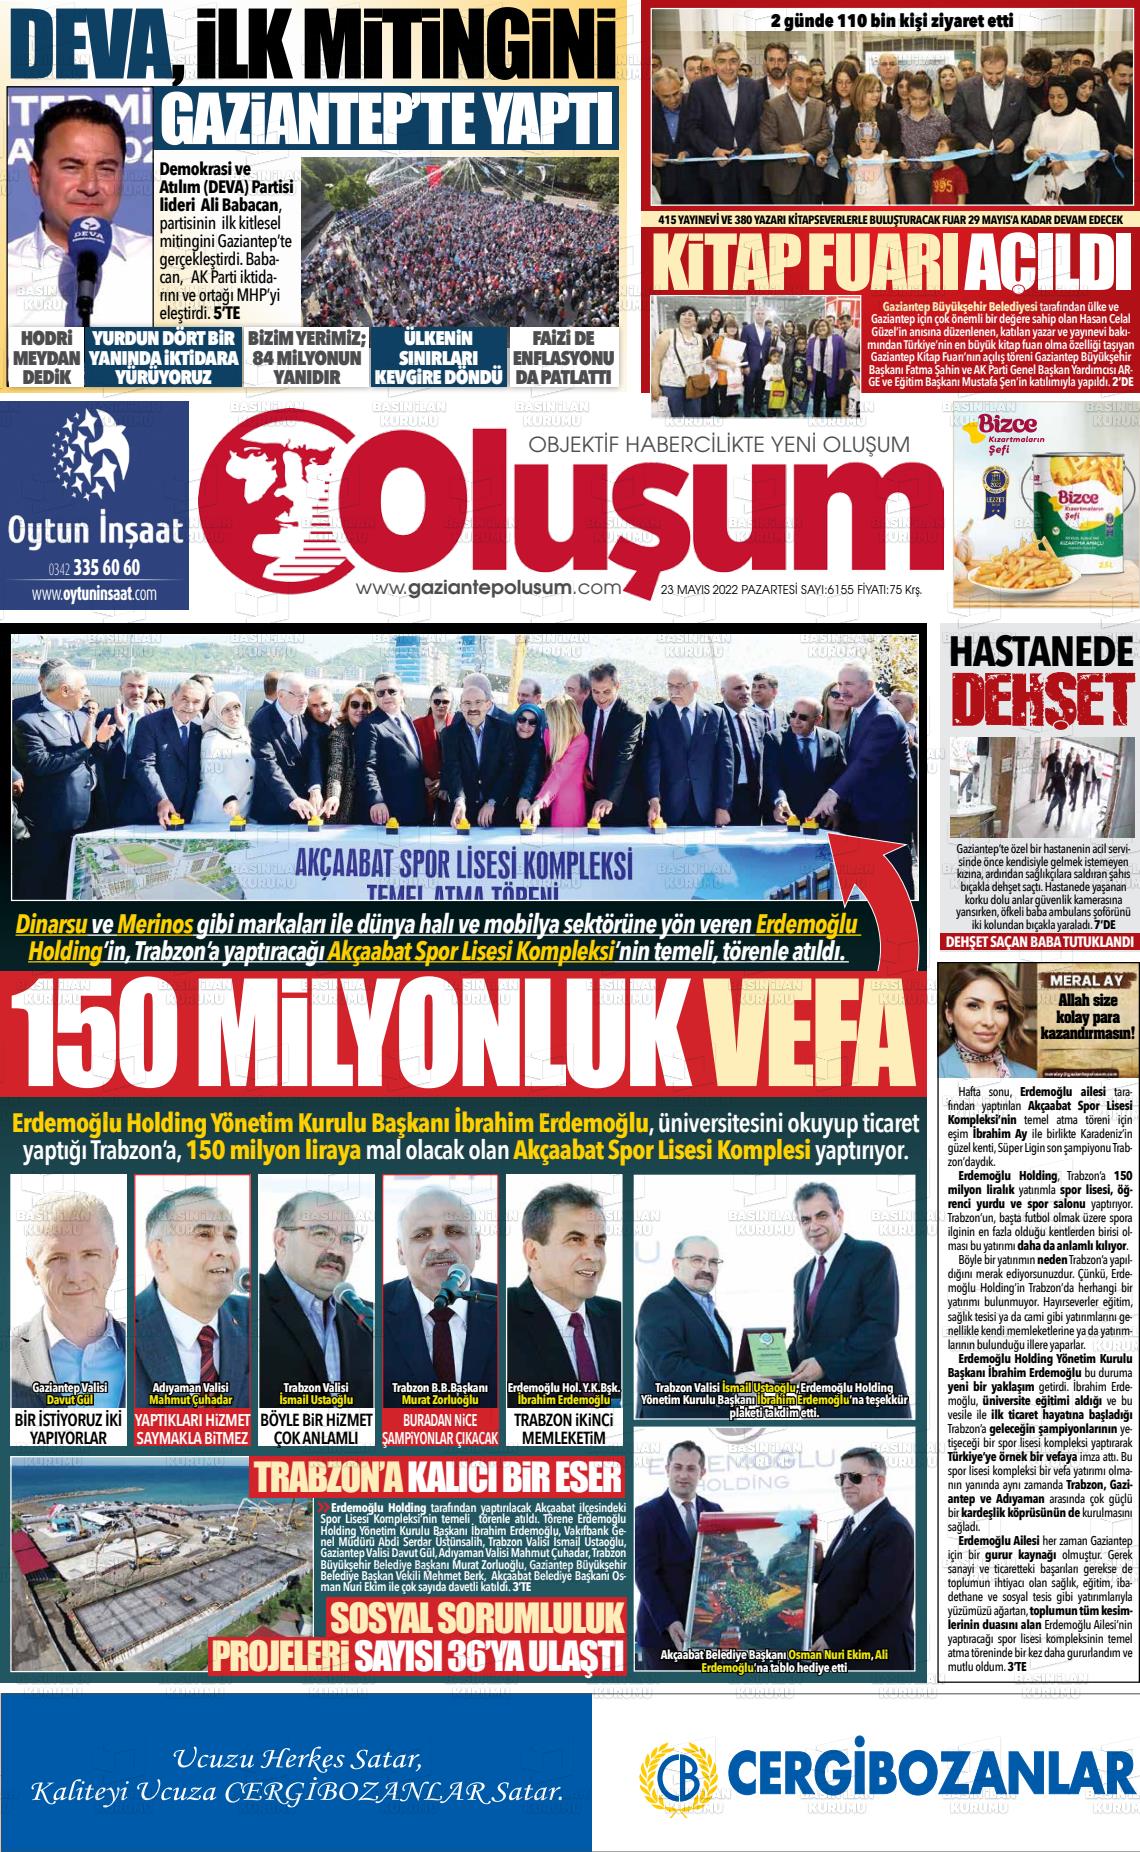 23 Mayıs 2022 Gaziantep Oluşum Gazete Manşeti